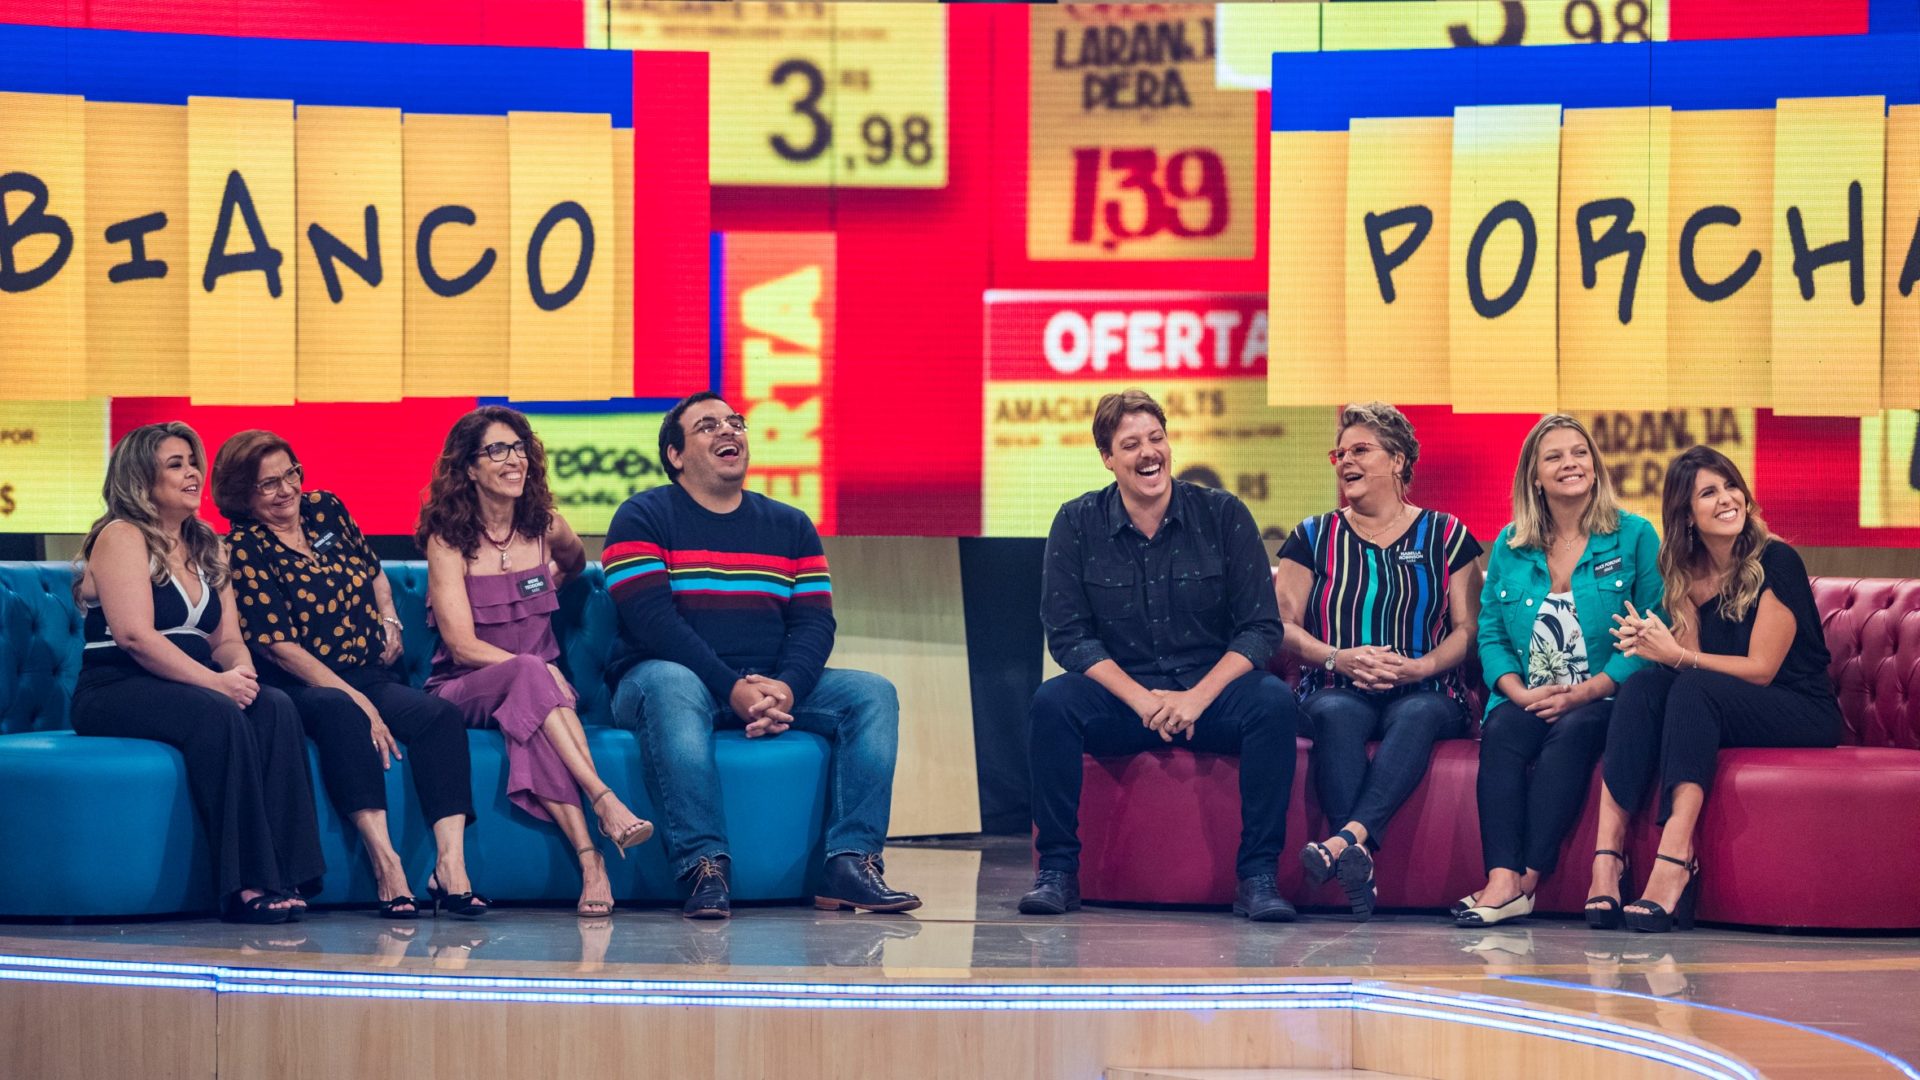 Luís Lobianco, Fabio Porchat e suas famílias no palco do programa Tamanho Família